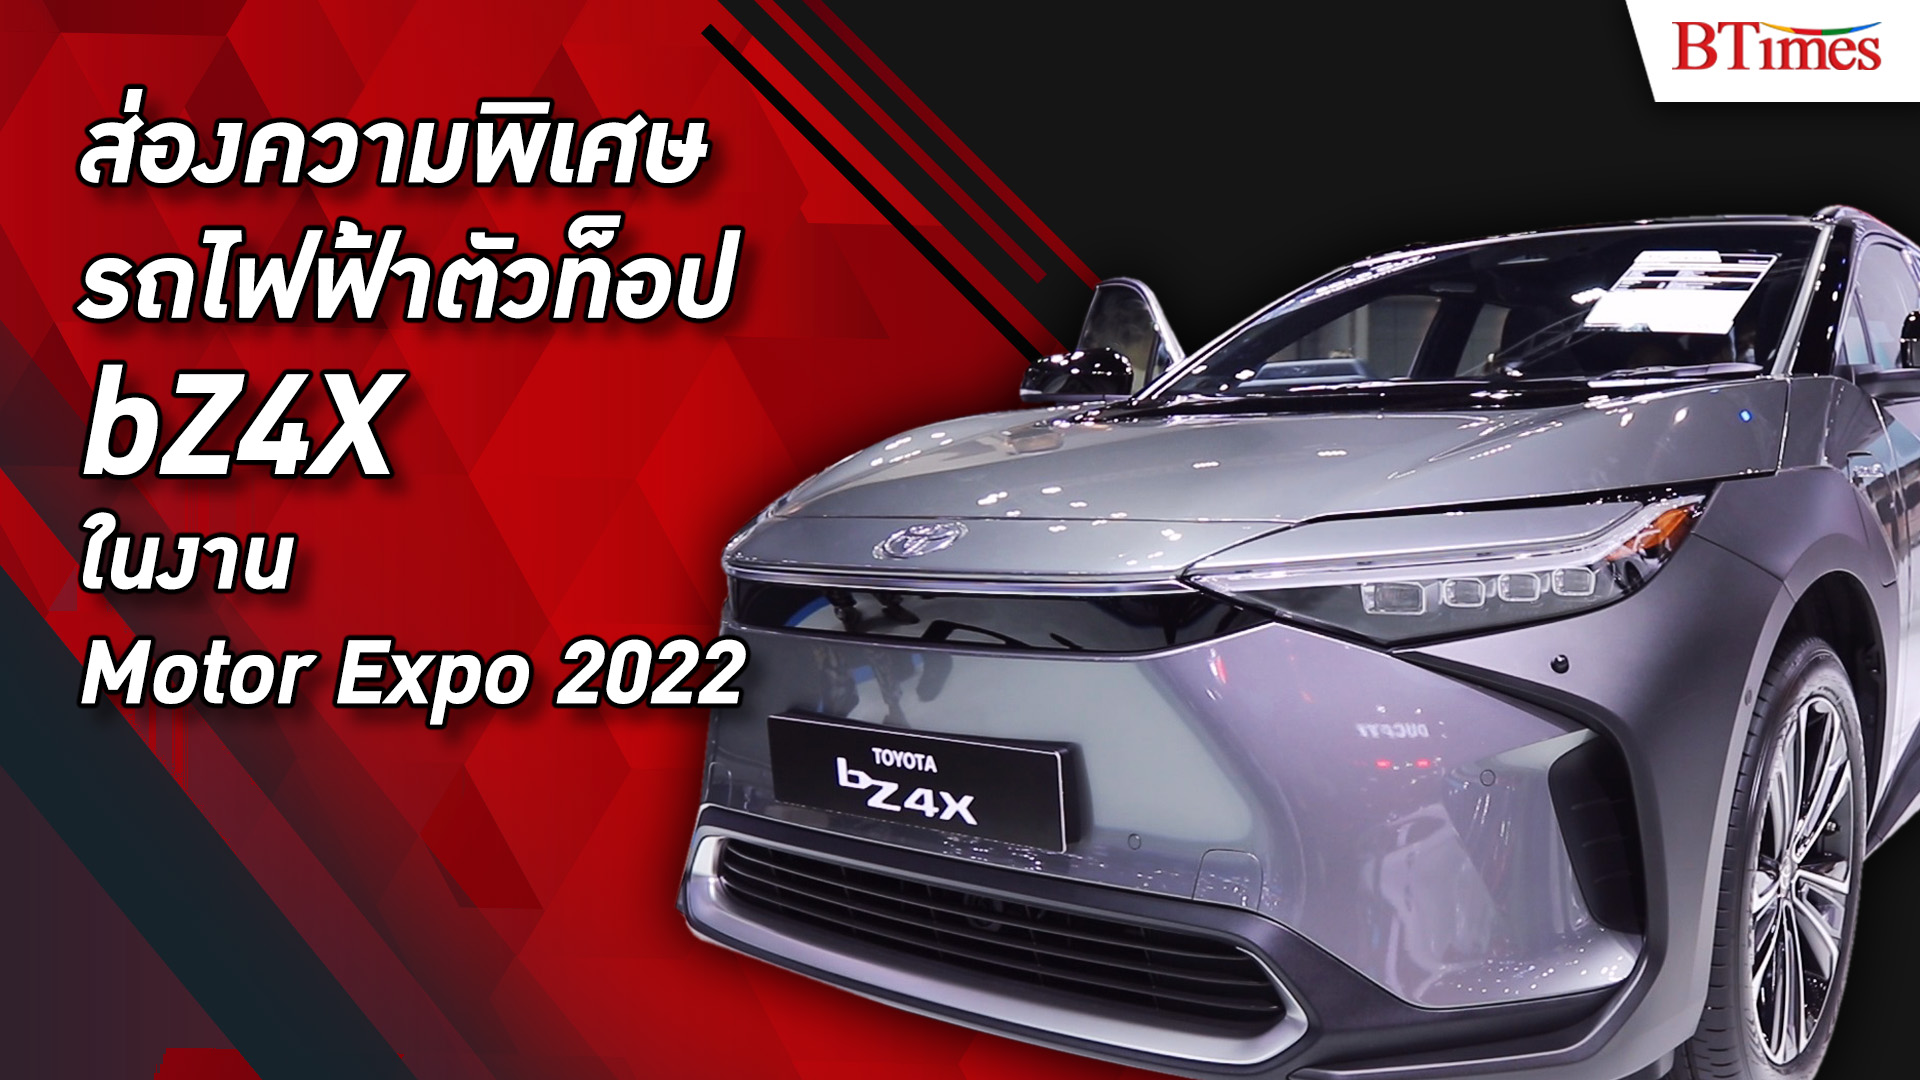 โตโยต้าย้ำภาพผู้นำ xEV เปิดตัวรถสายพันธุ์แชมป์ จัดโปรส่งสุขท้ายปีในงานมอเตอร์เอ็กซ์โป 2022 l BTimes